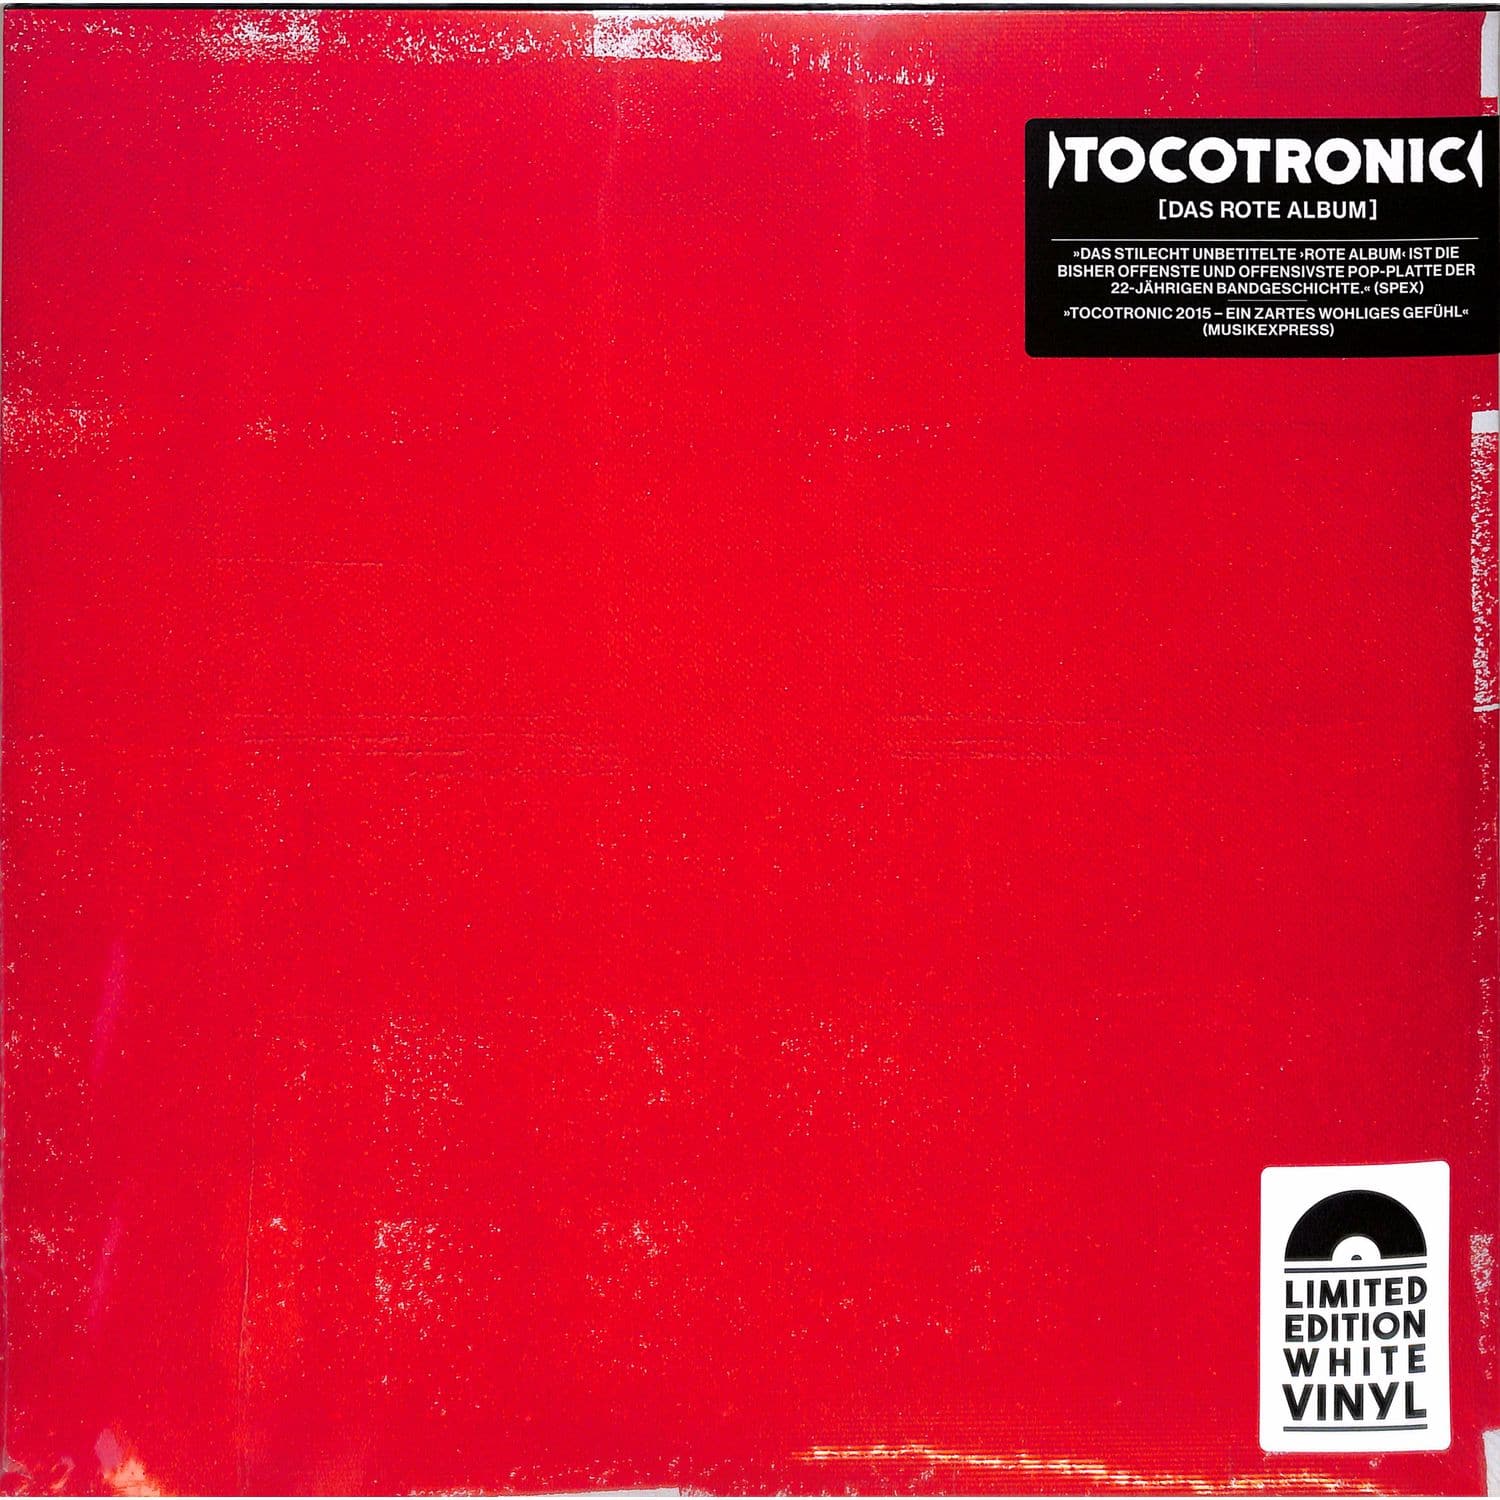 Tocotronic - DAS ROTE ALBUM 